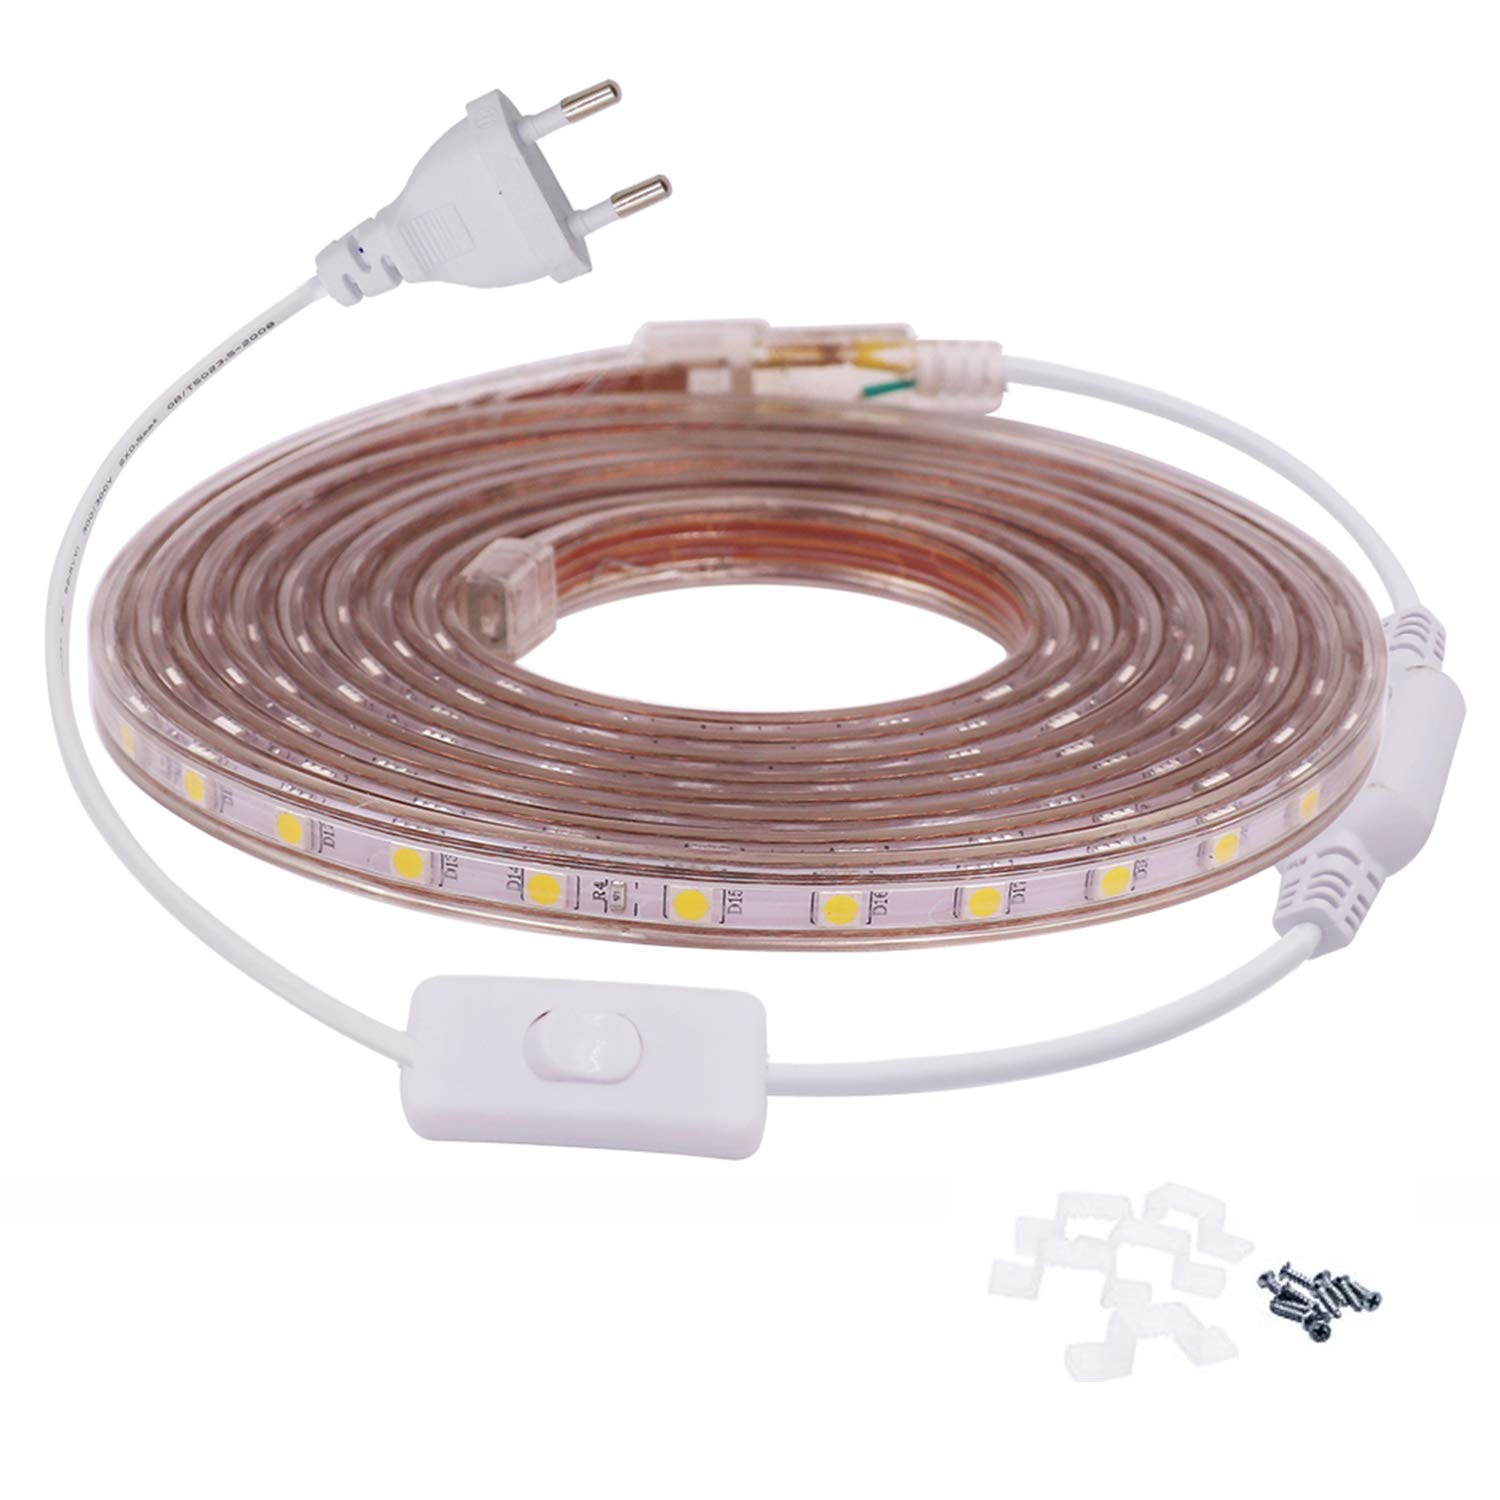 FOLGEMIR 8m Warmweiß LED Band mit Schalter, 220V 230V Lichtleiste, 60 Leds/m Strip, IP65 Lichtschlauch, milde Hintergrundbeleuchtung